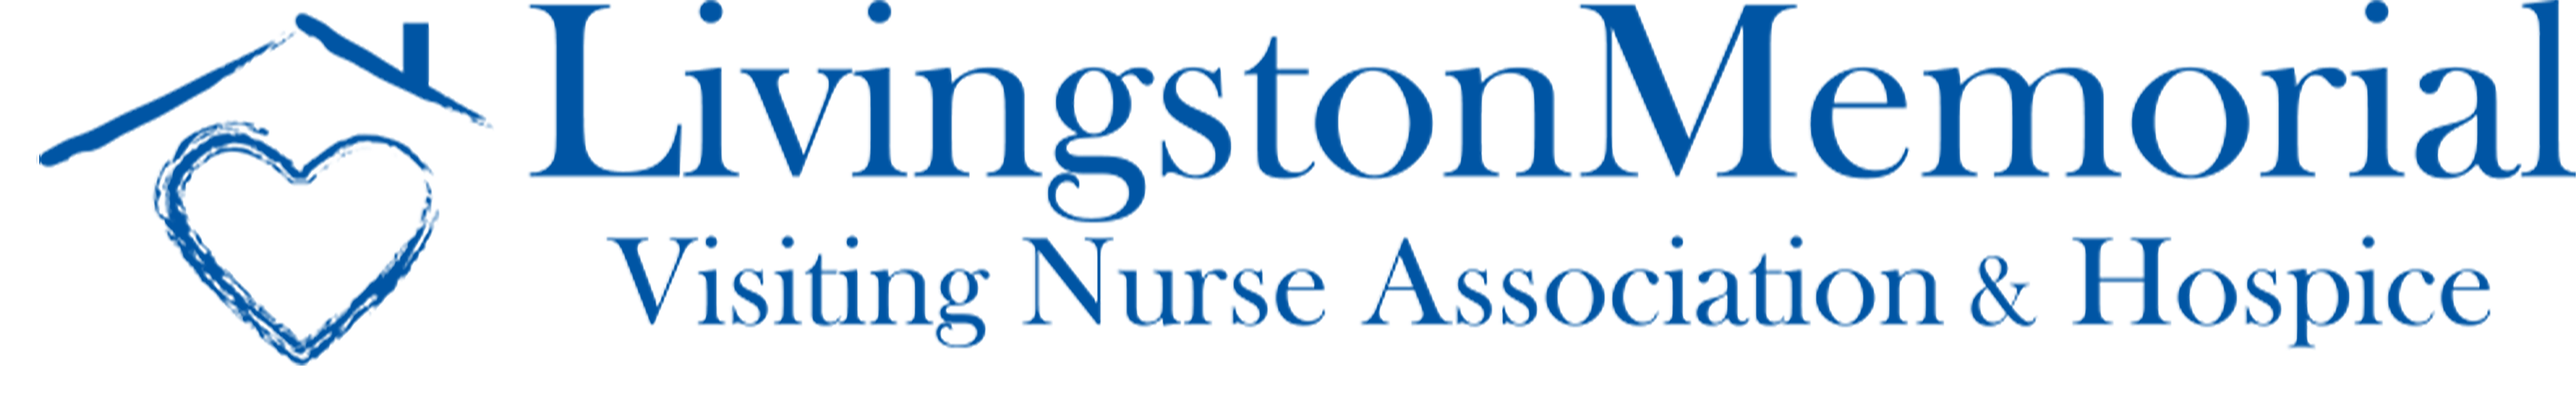 C. Livingston Memorial Visiting Nurse Association (Plata)